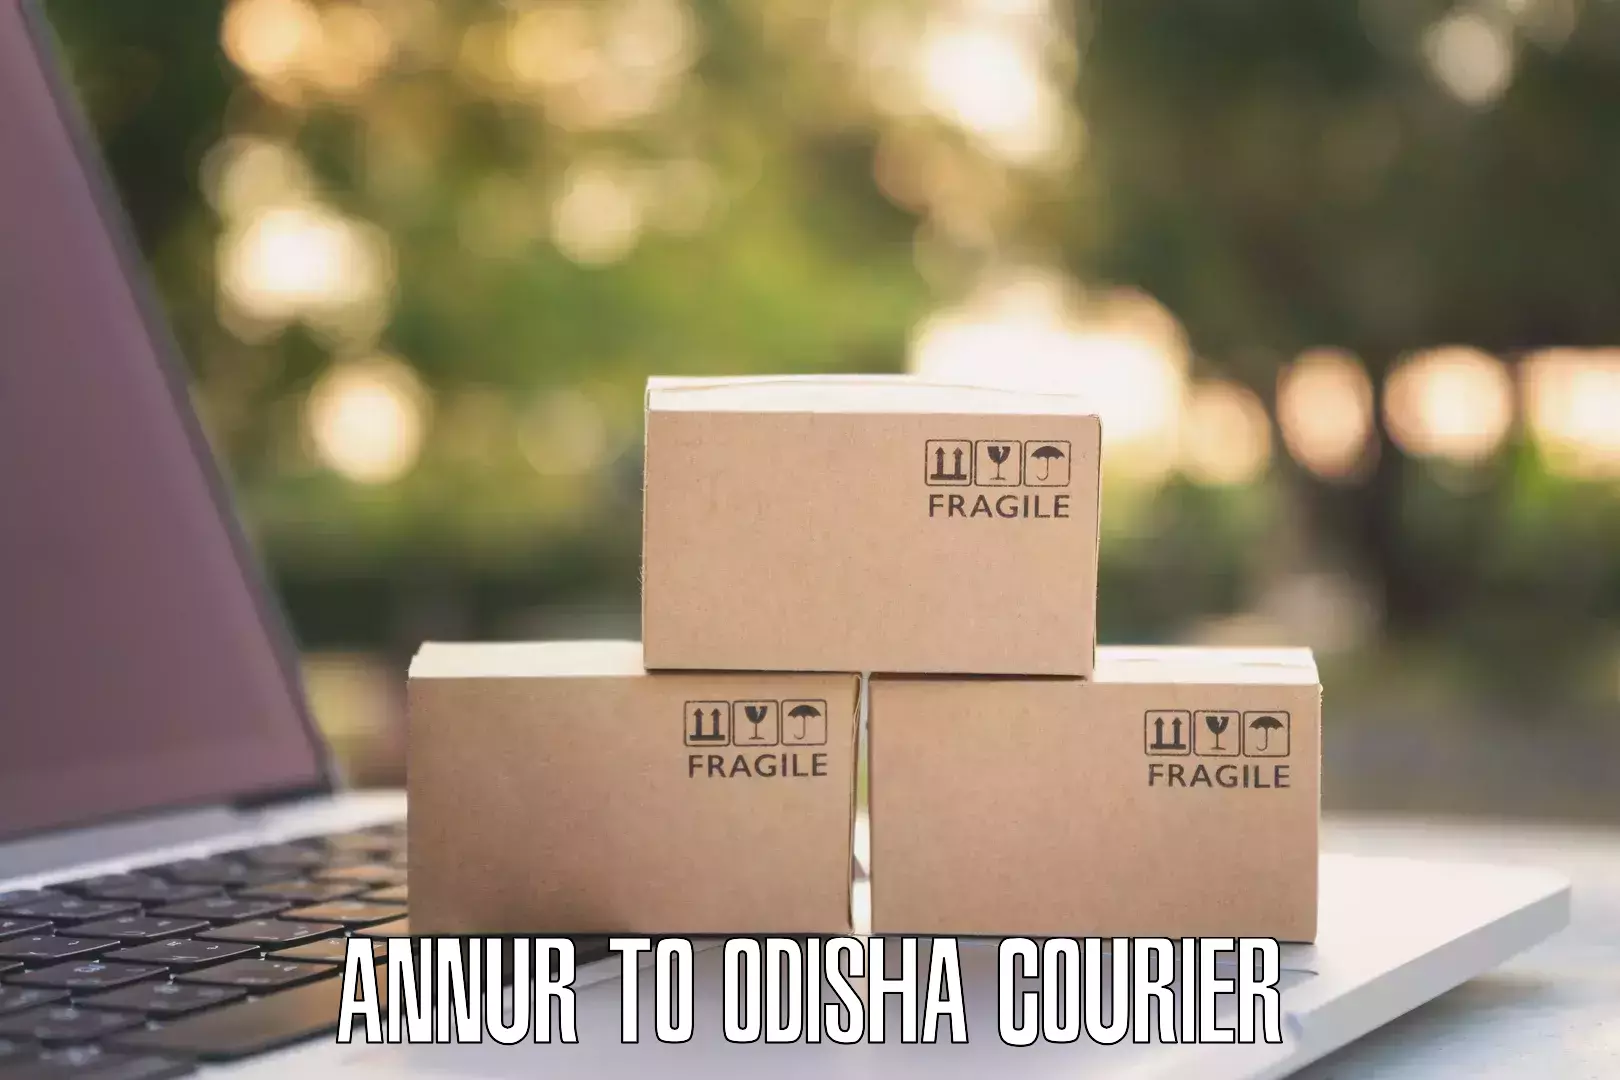 Domestic courier Annur to Jagatsinghpur